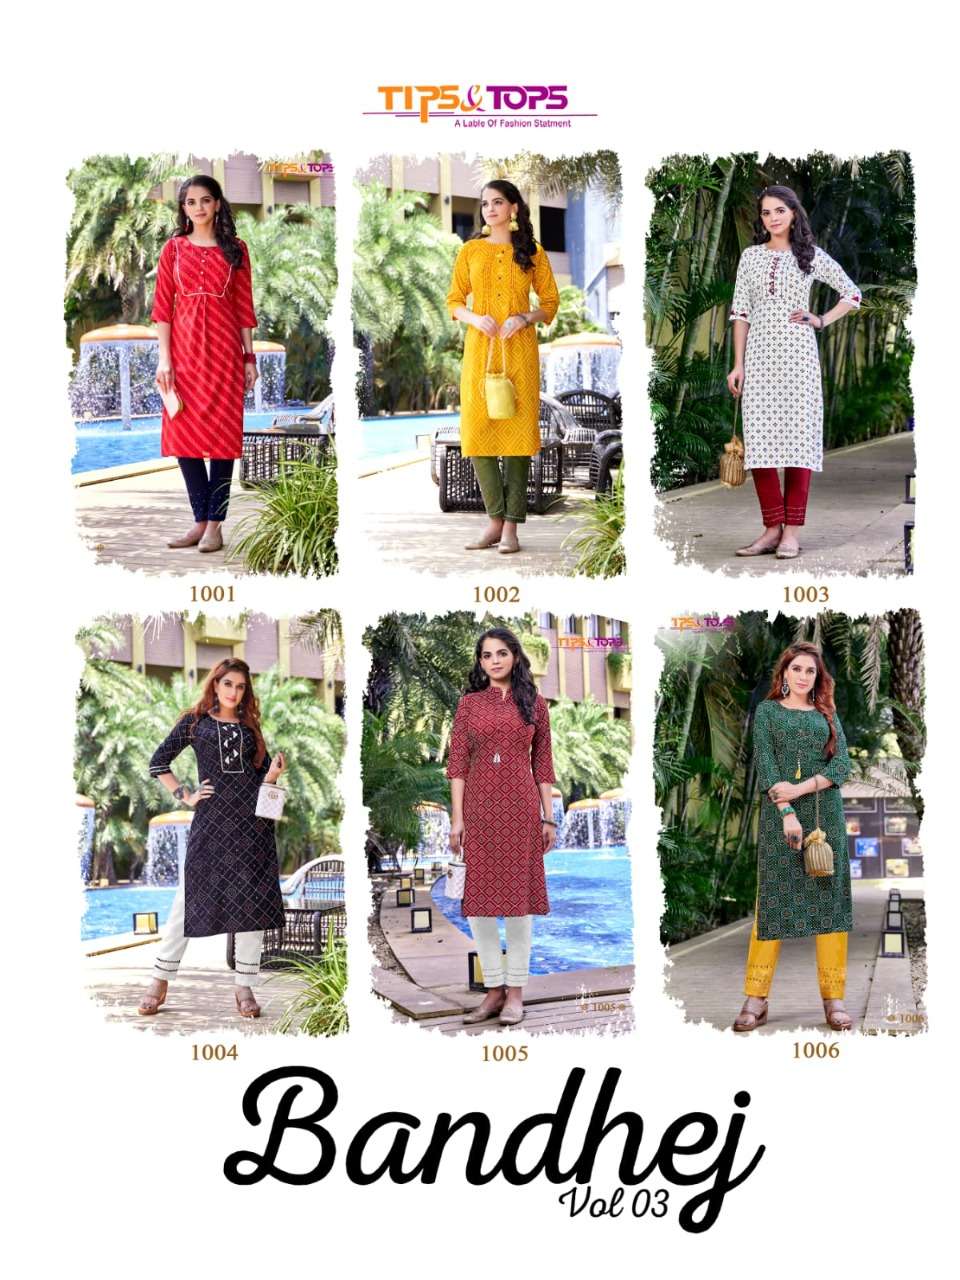 tips&tops bandhej vol 2 1001-1006 series fancy rayon designer kurtis with pant set wholesale price surat